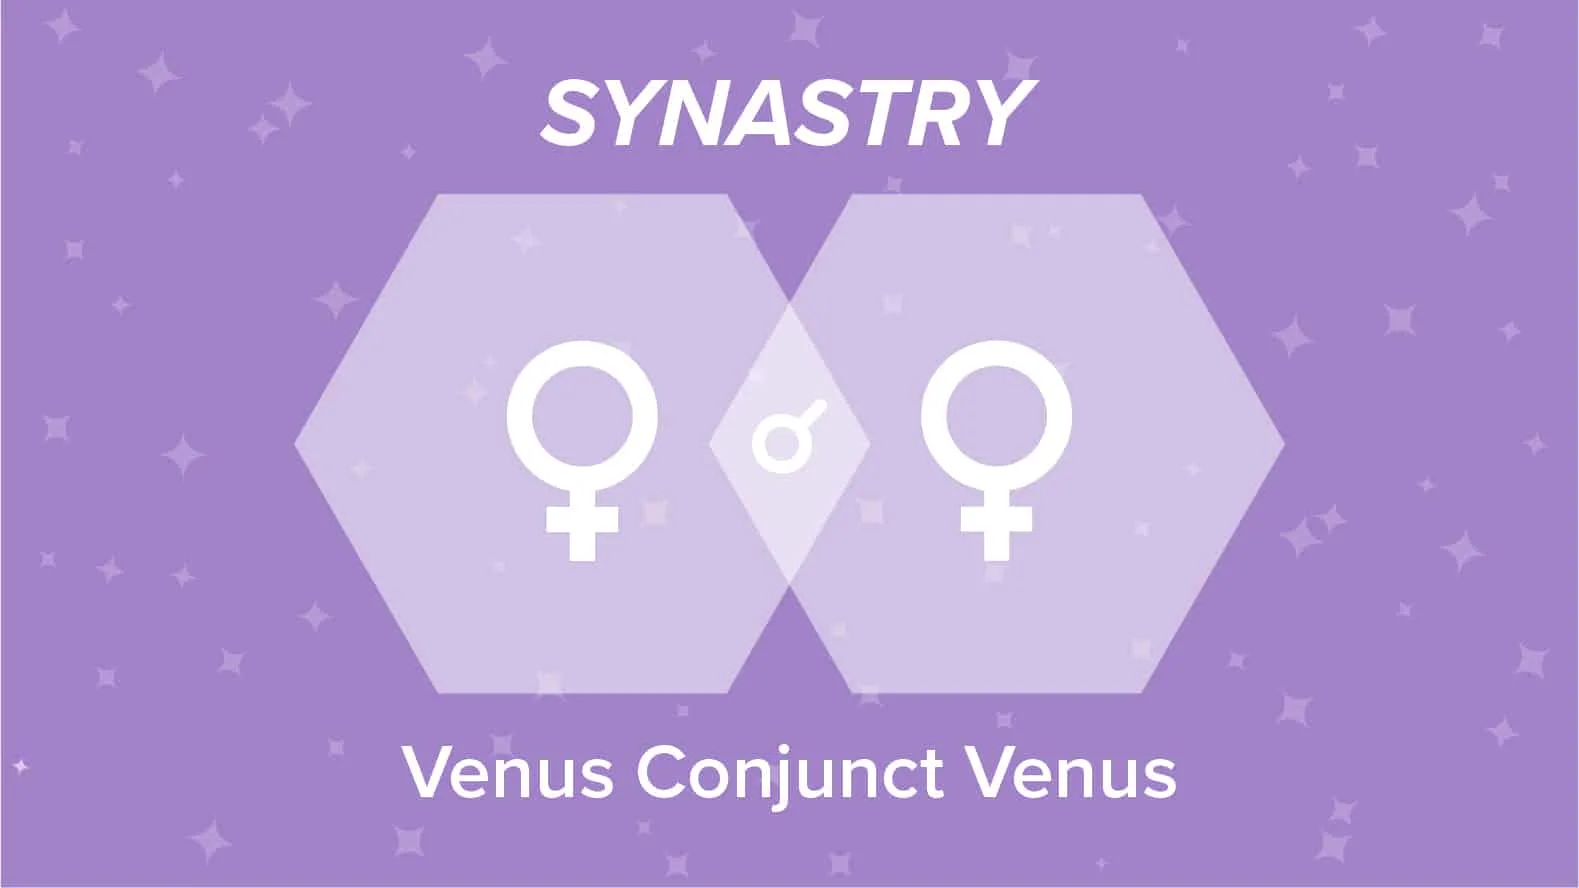 Venus Conjunct Venus Synastry